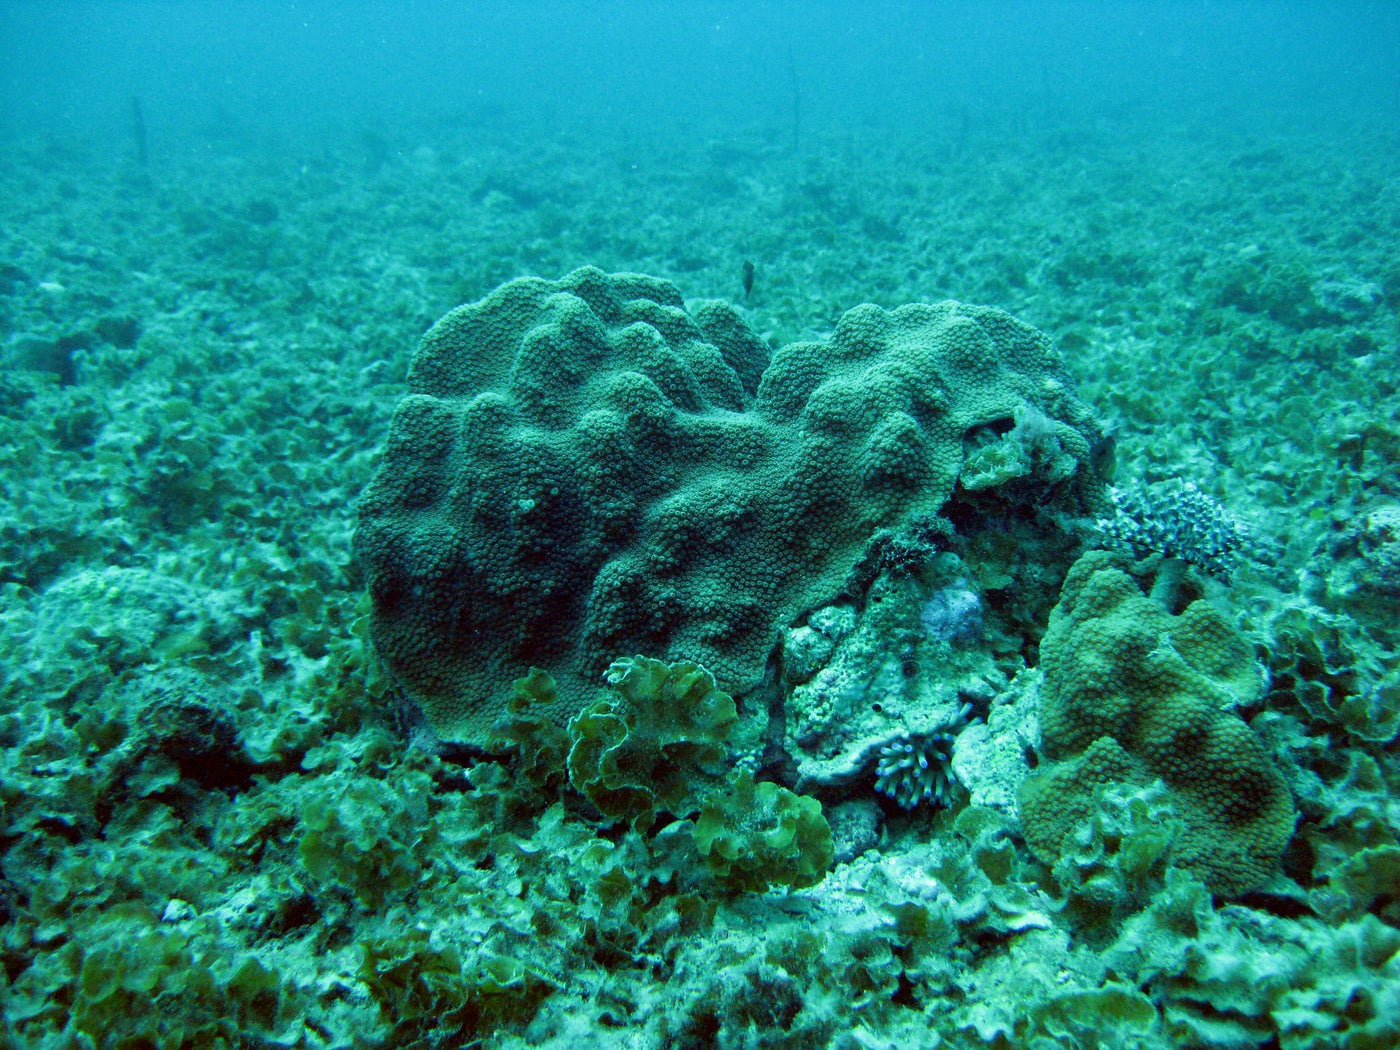 Arrecifes de coral: los bosques tropicales del mar